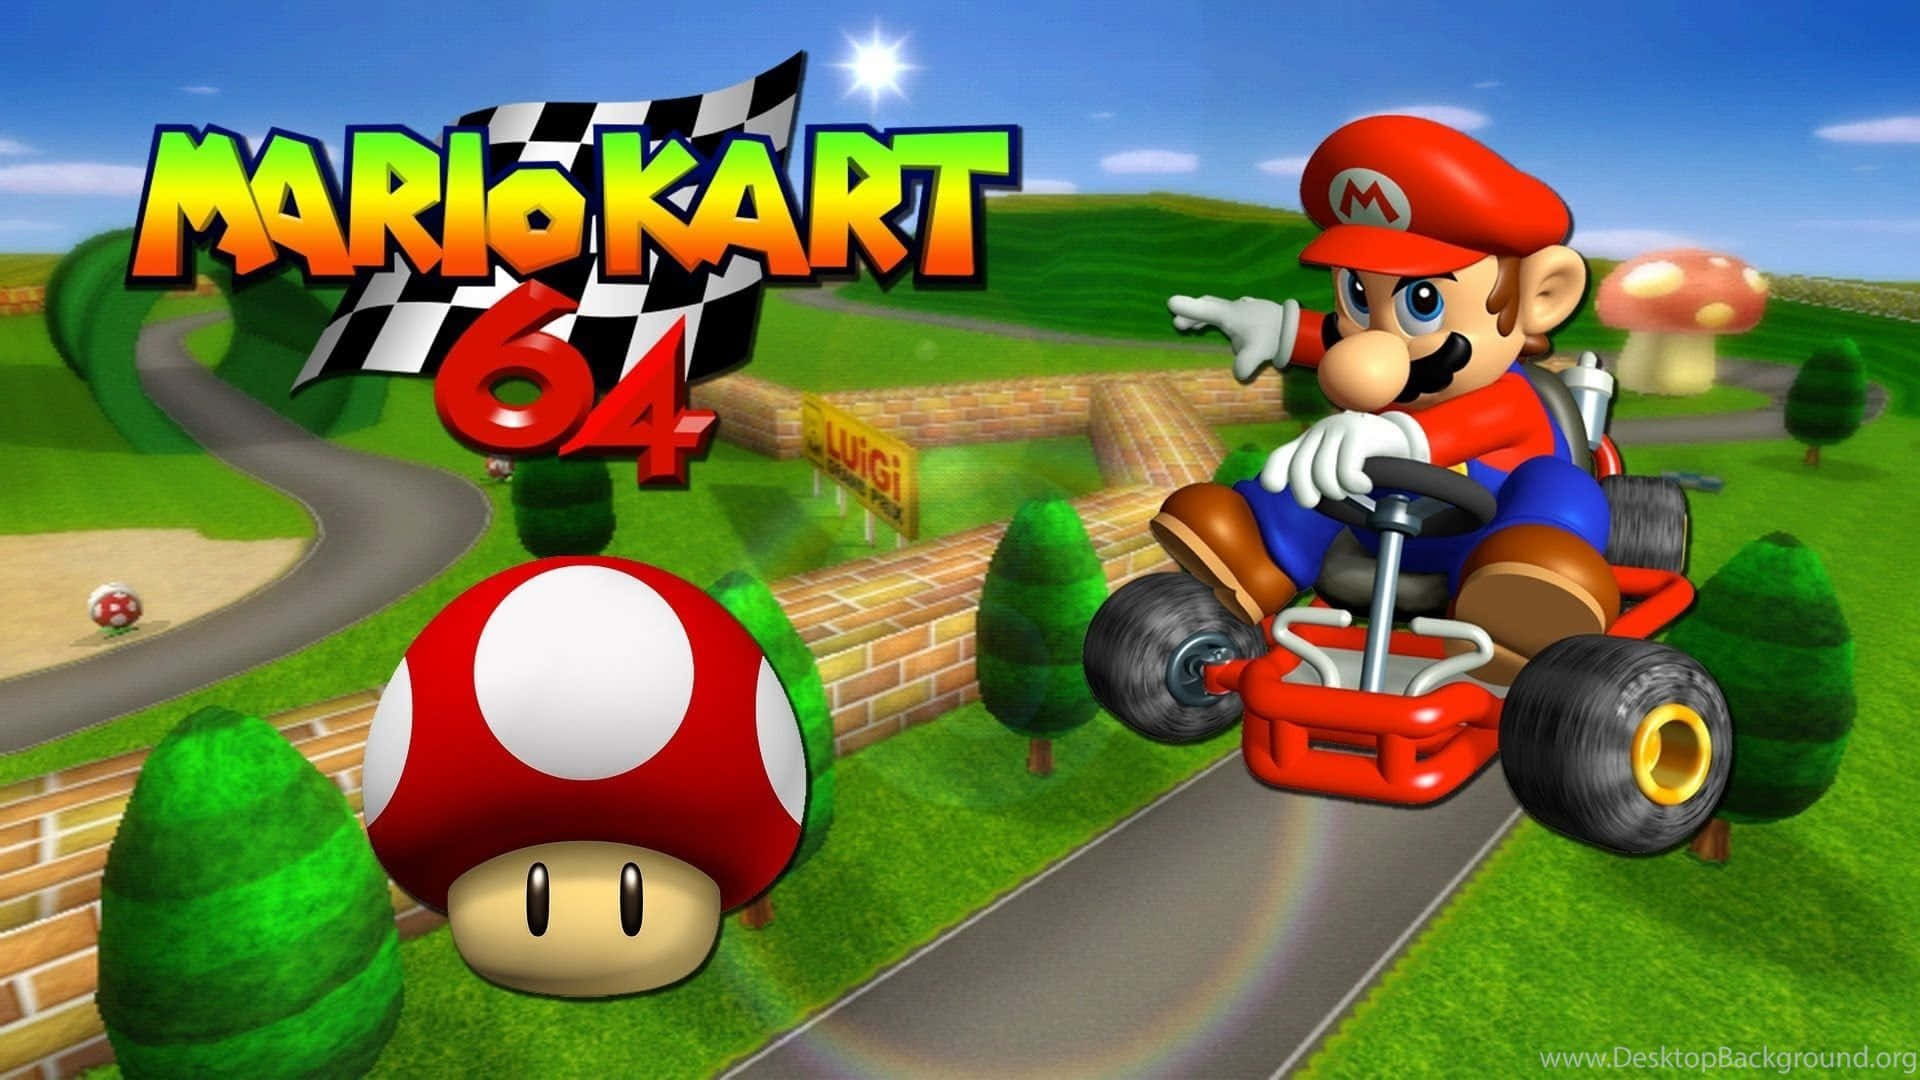 Mariokart 64 - Kart De Nintendo 64